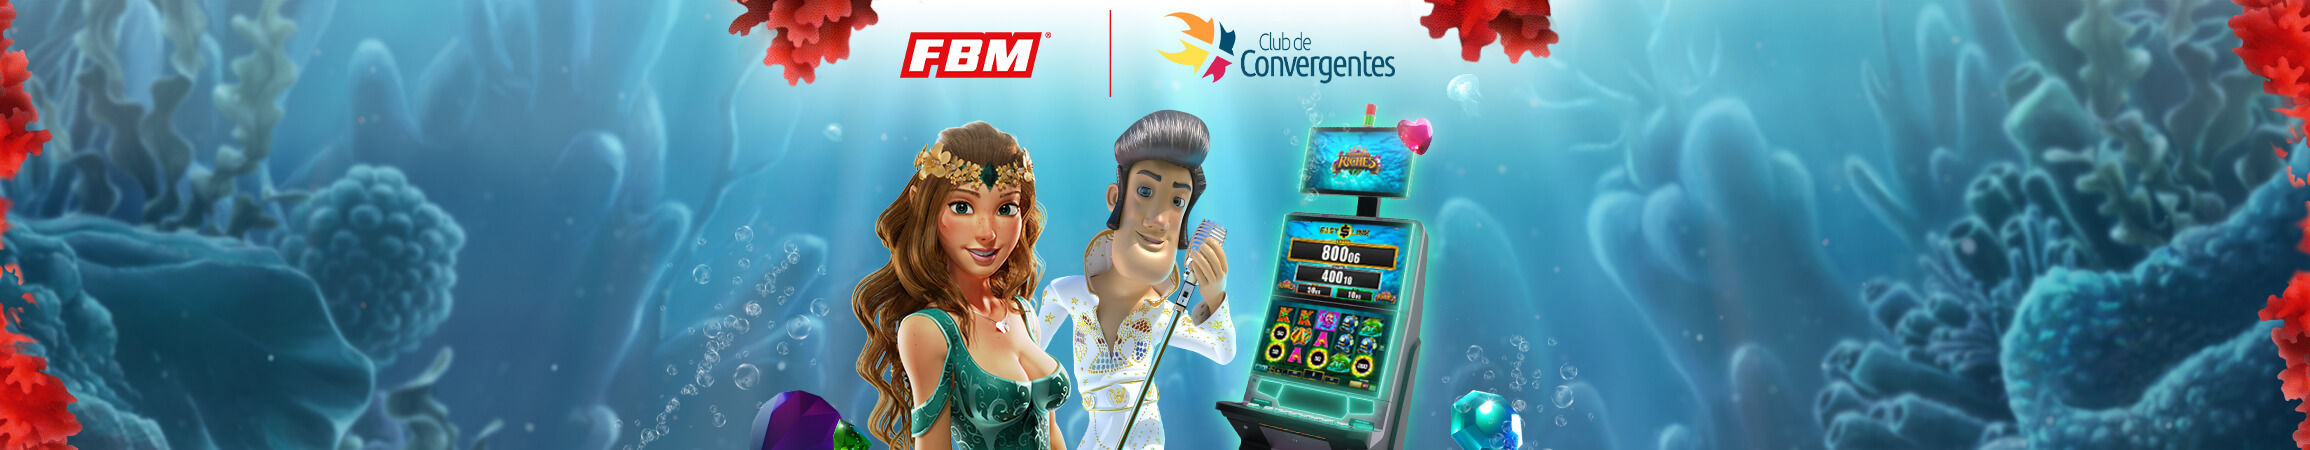 FBM® Spain joins Club de Convergentes